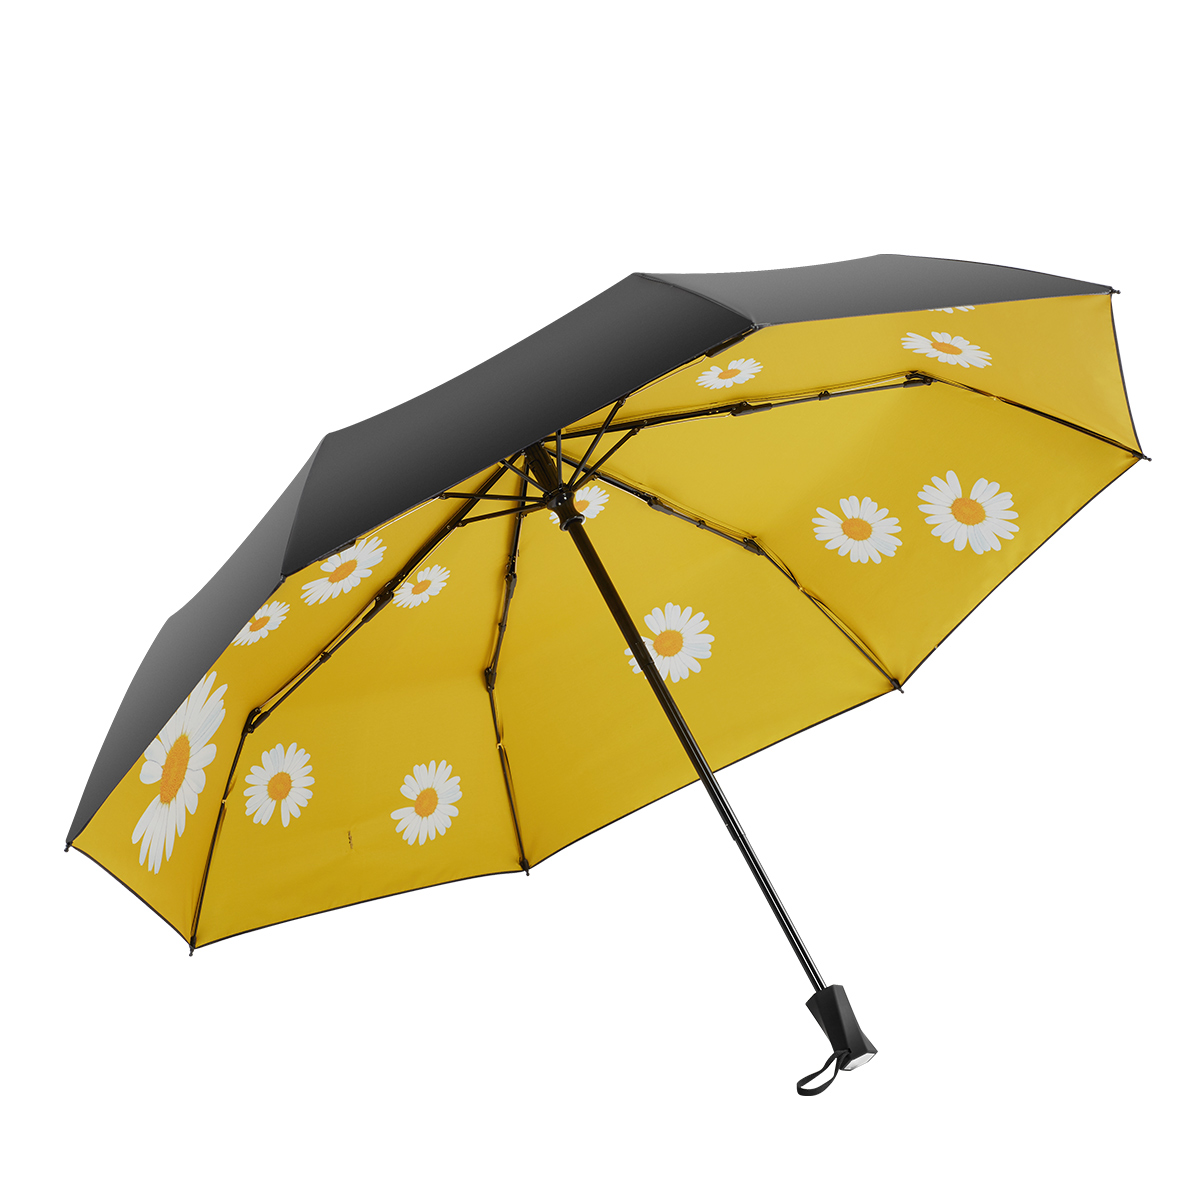 Ovida patio černý UV nátěr s květem sedmikrásky 3 skládací deštníky bezpečné ruční otevírání a zavírání módní design deštníky horké výprodej